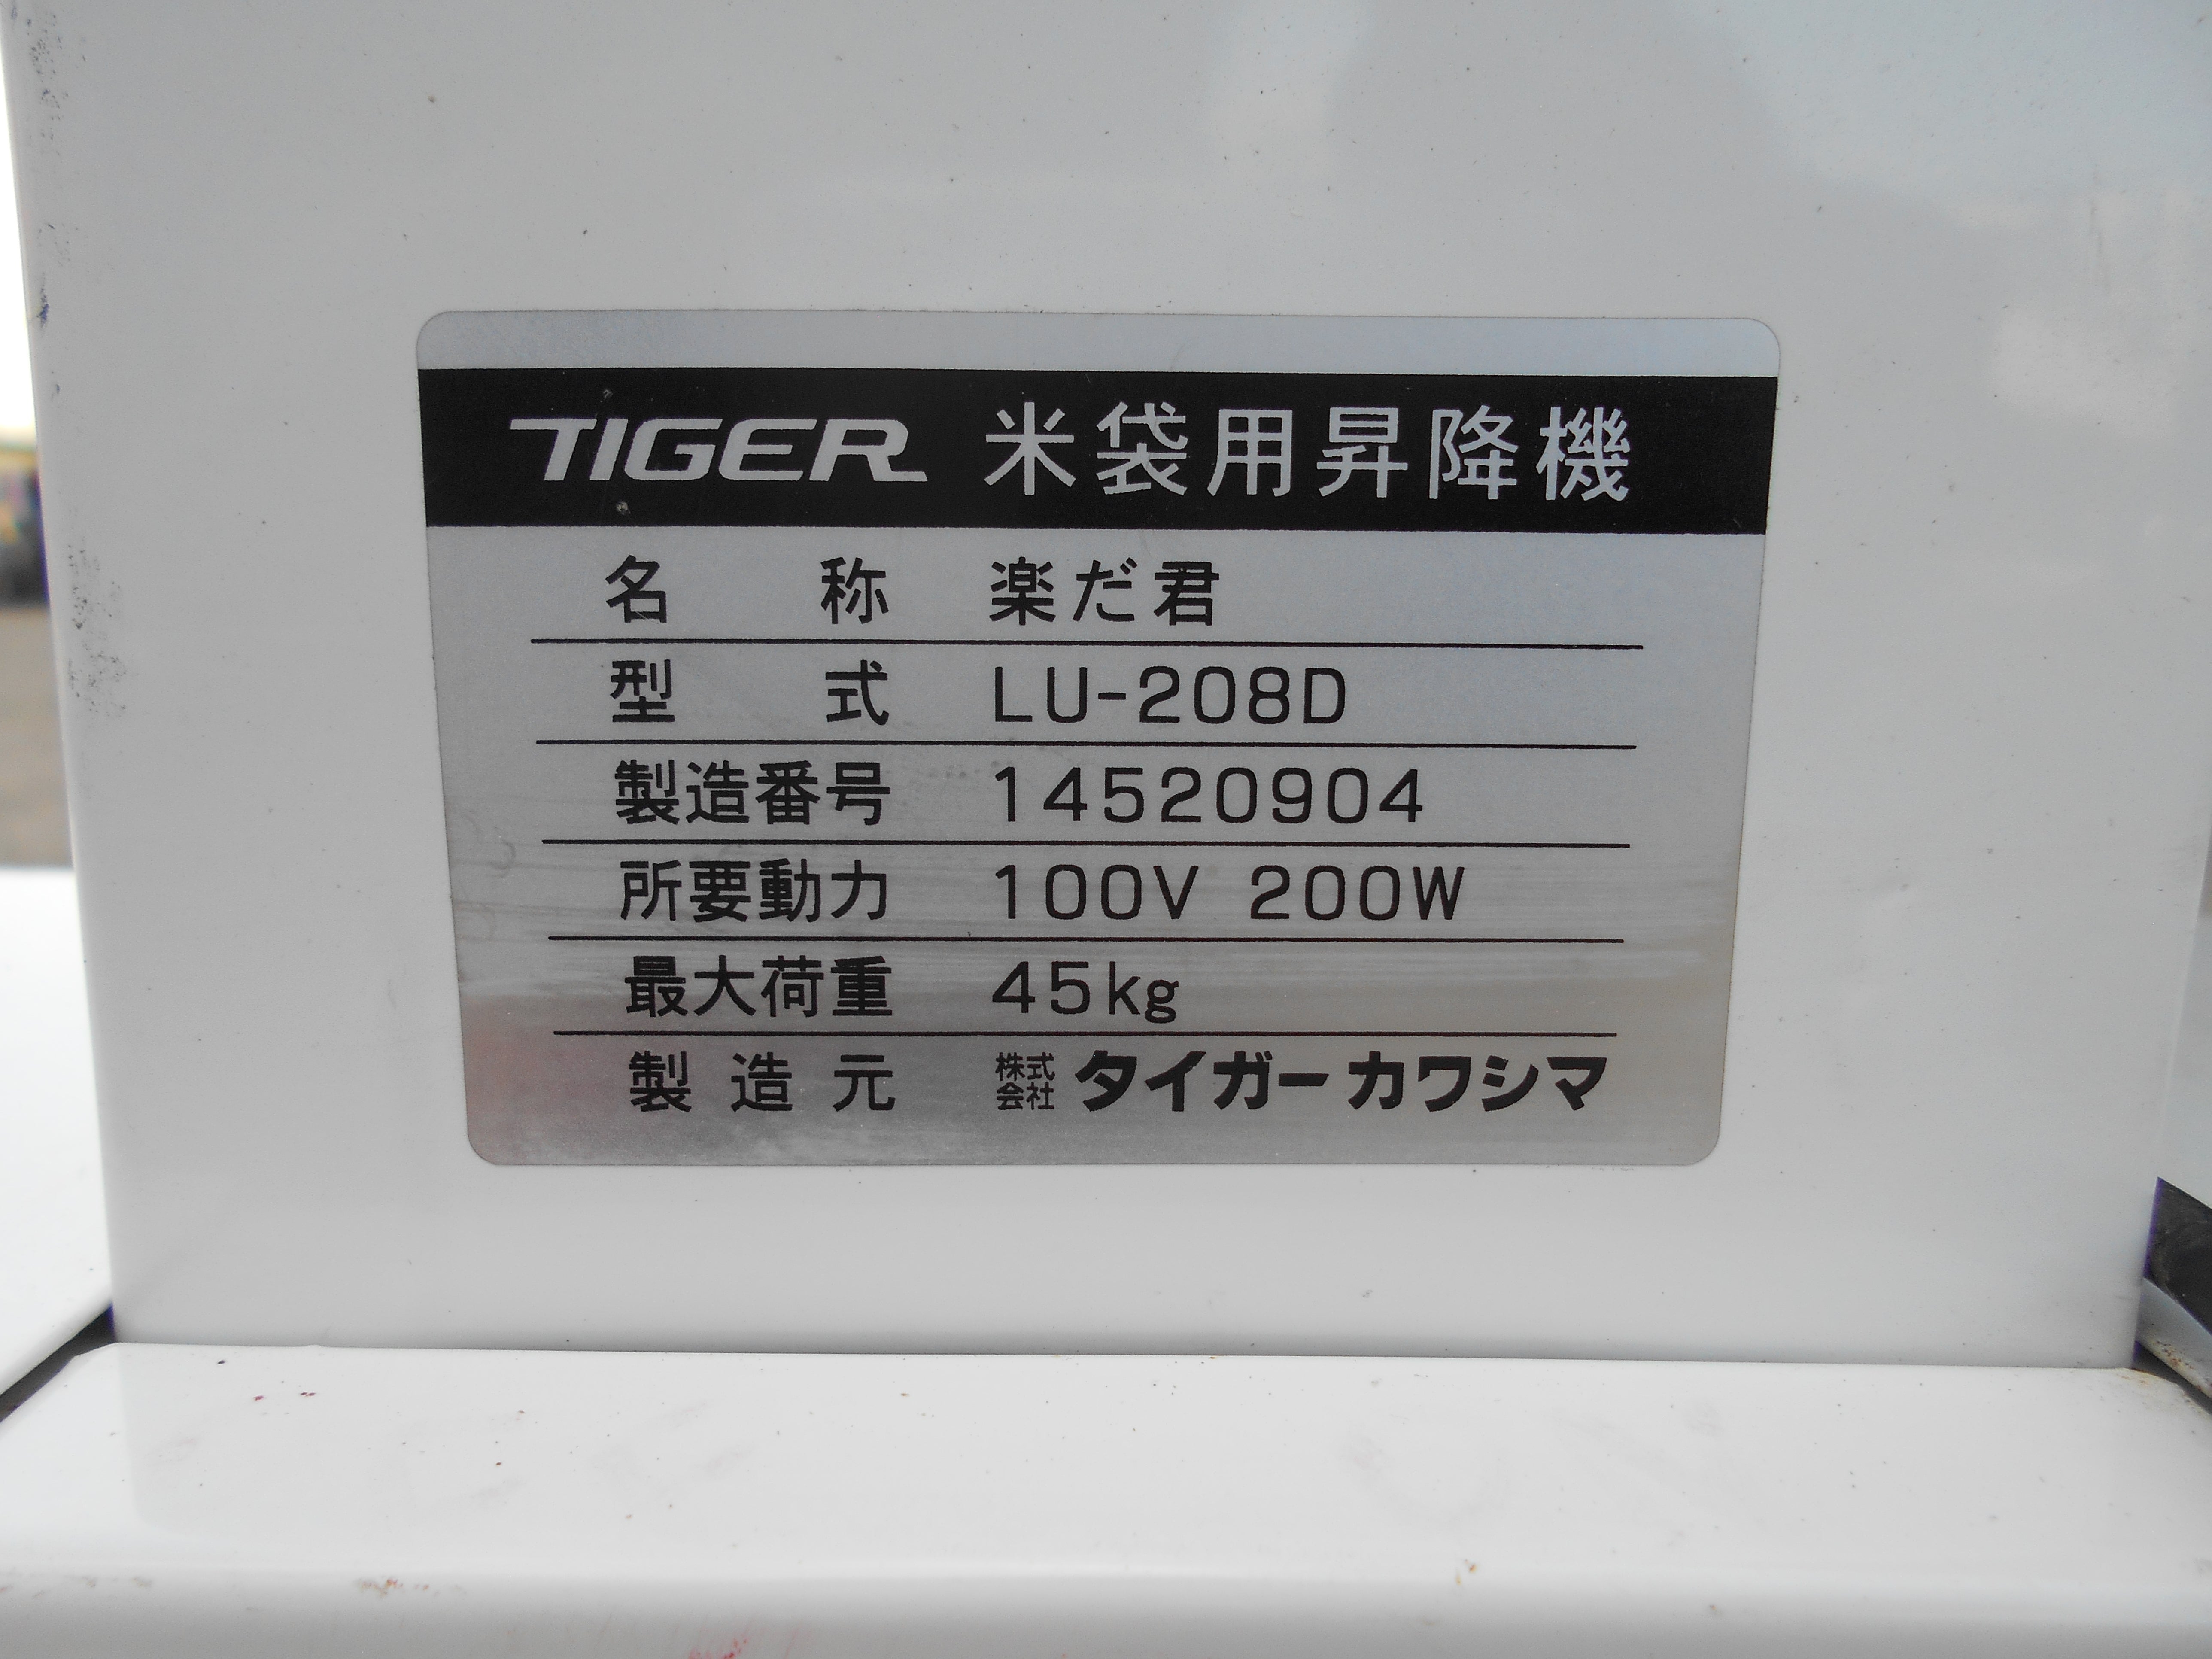 北海道茨城 タイガー 米袋用昇降機 LU-203F だ君 リフトアップ リフター ターンテーブル 昇降機 米袋 100V 極上品 ■I22062862 その他